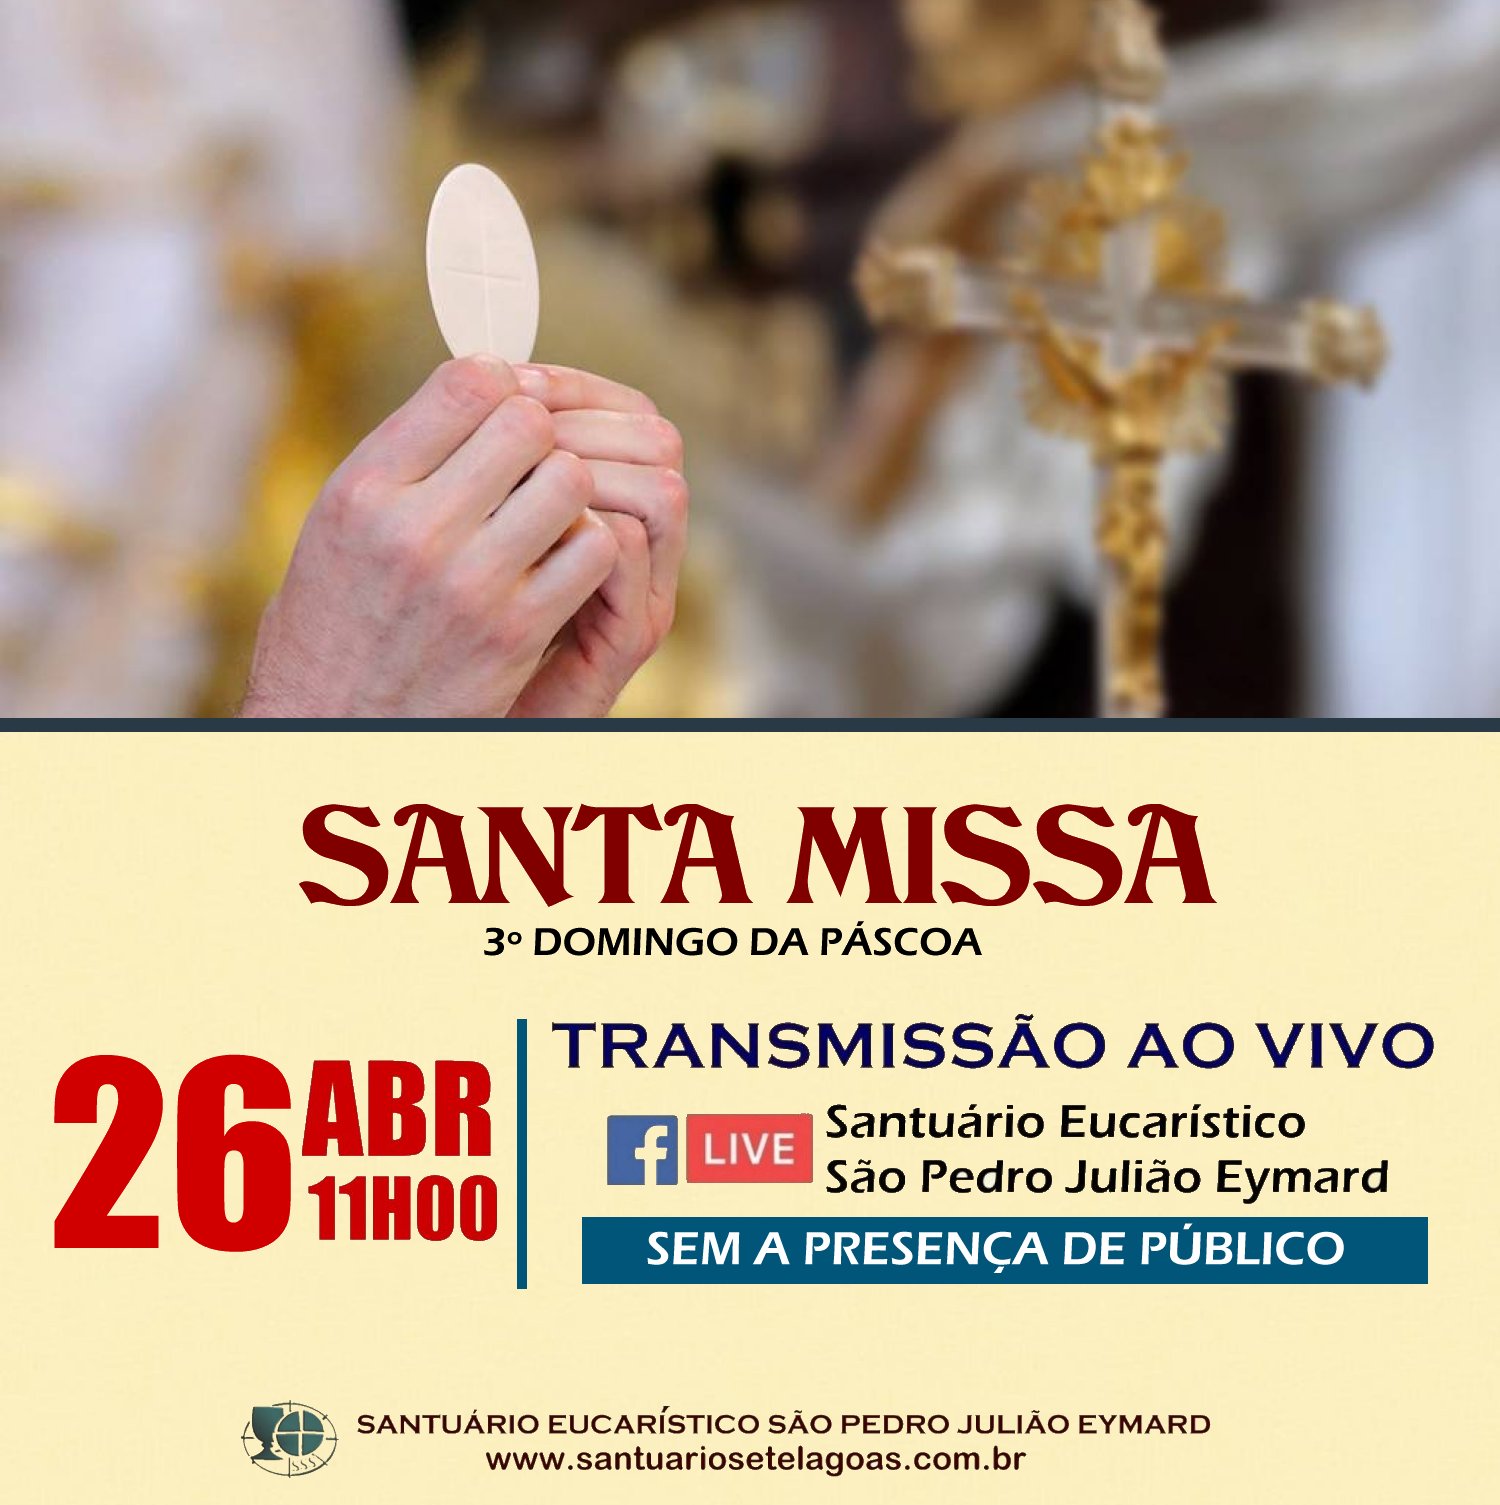 Santa Missa com transmissão ao vivo dia 26/04. Participe!